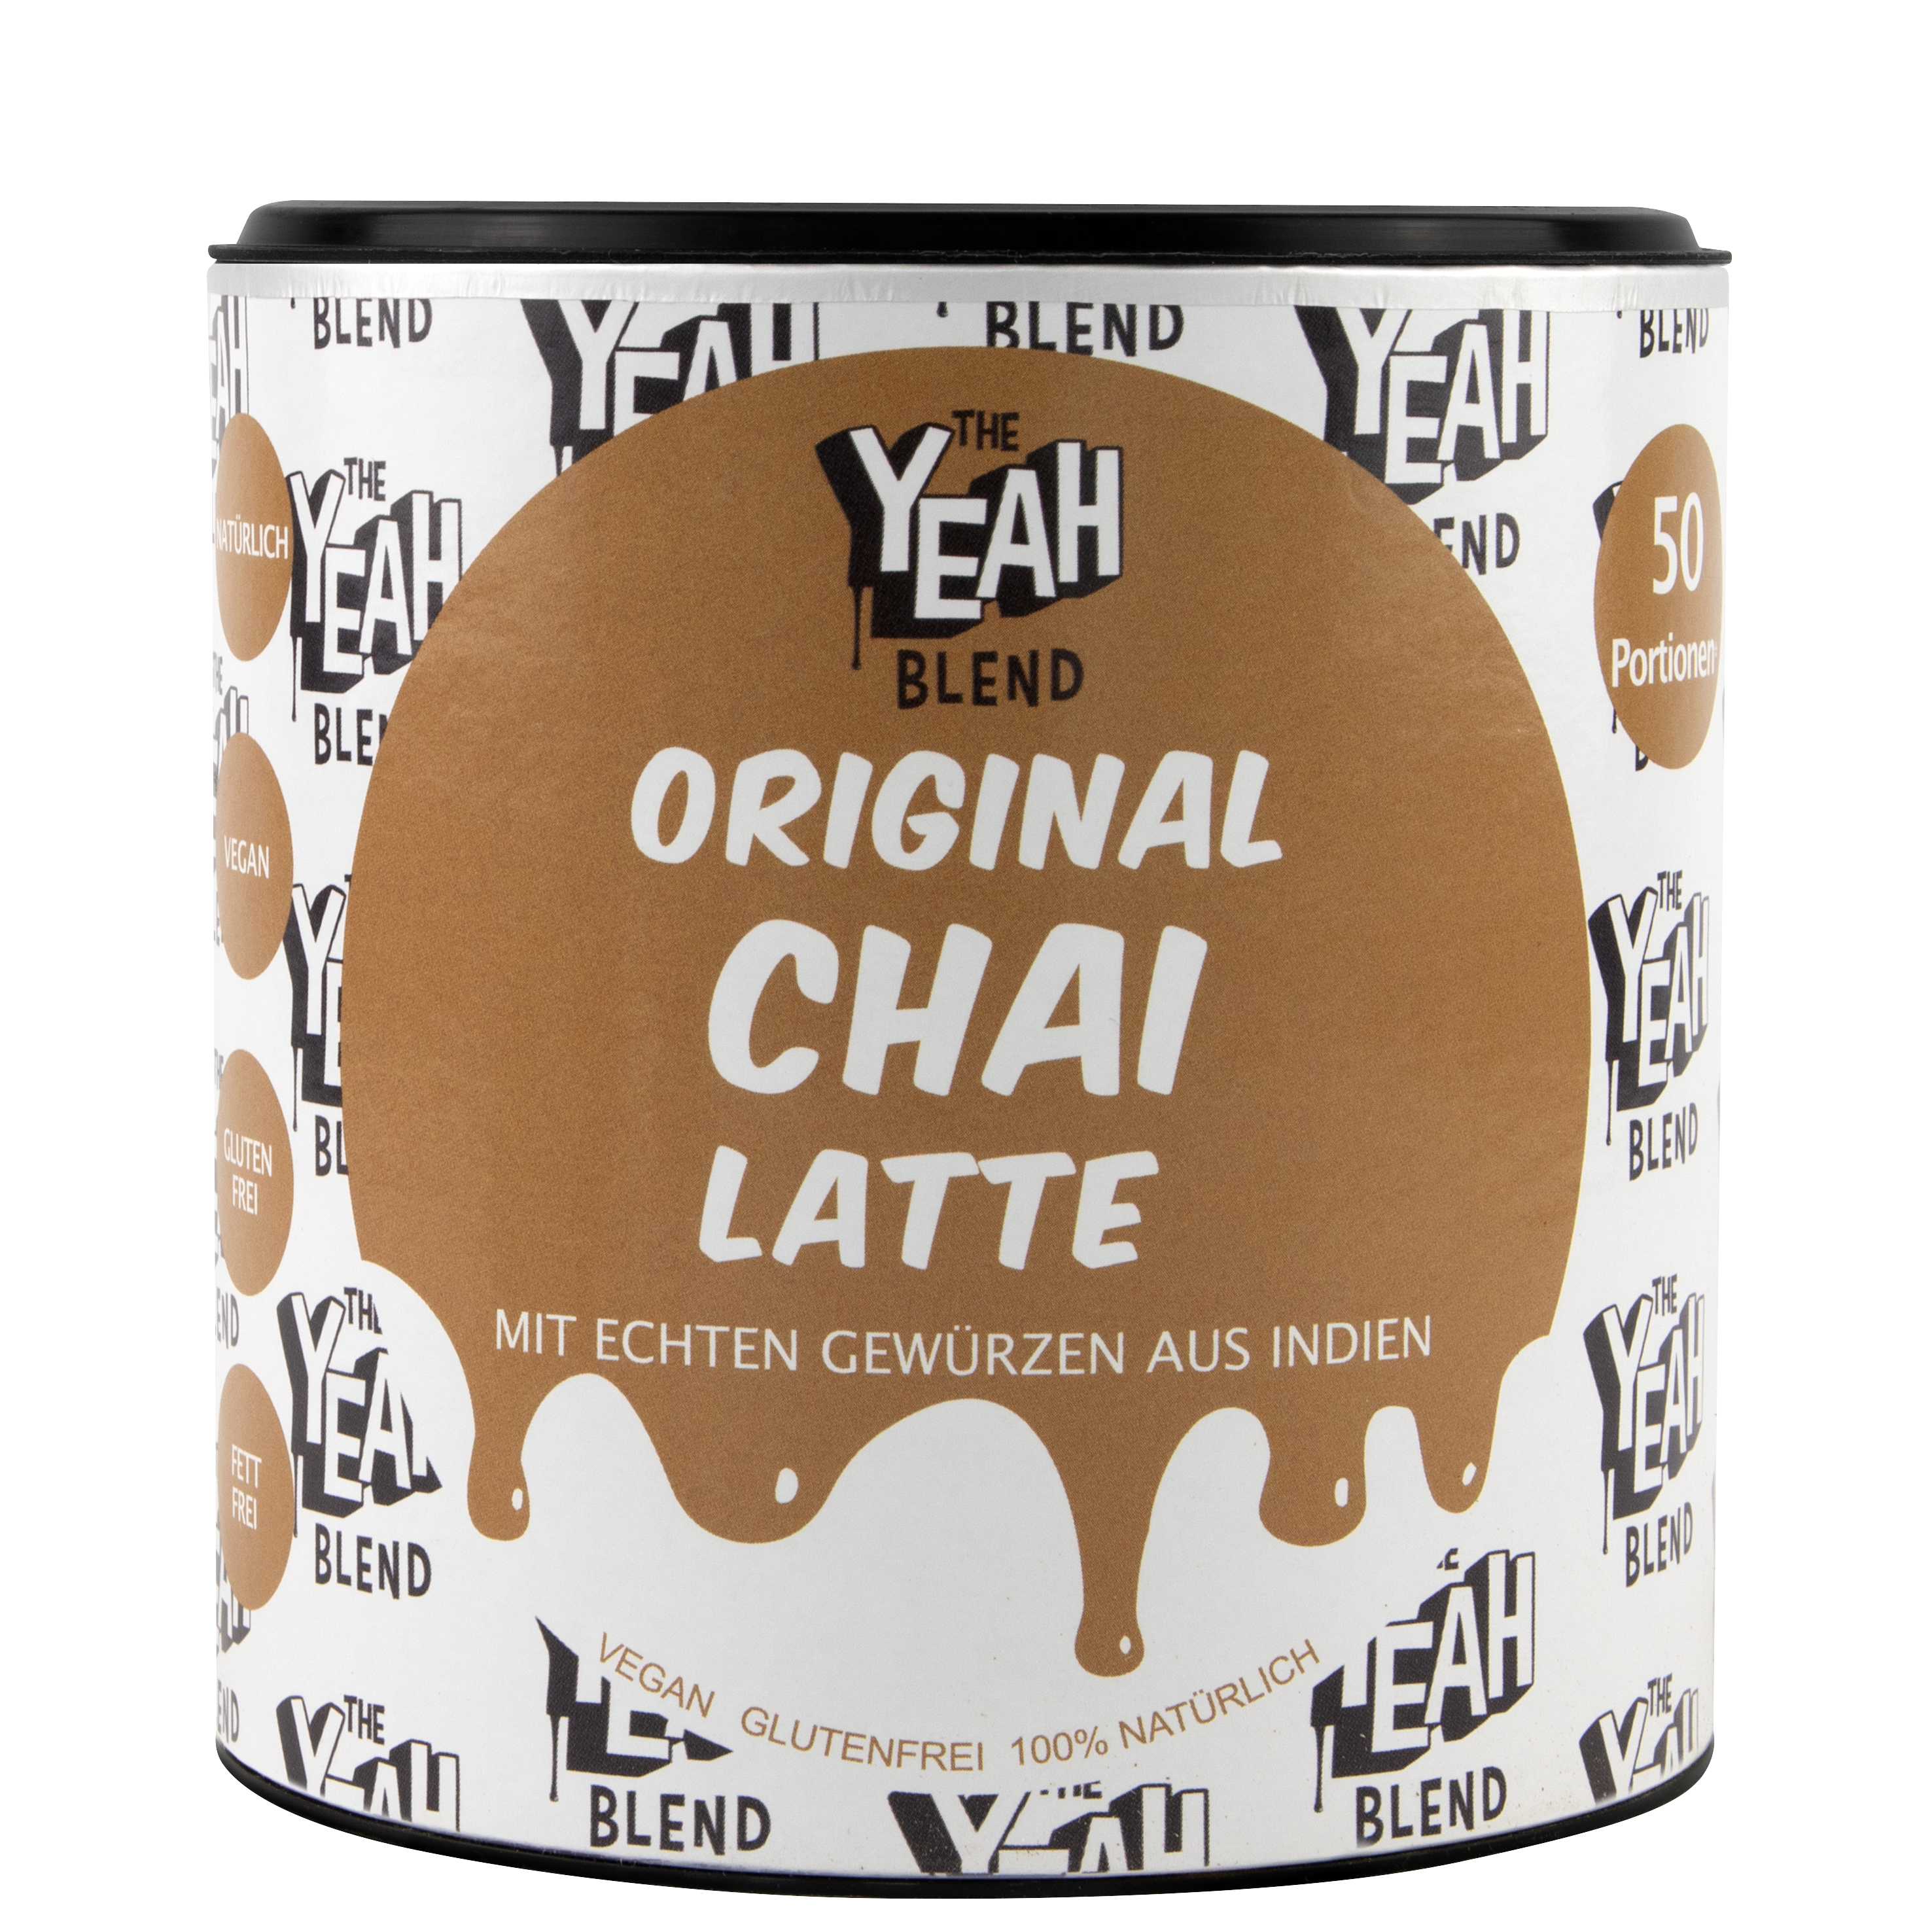 Yeah Original Chai Latte